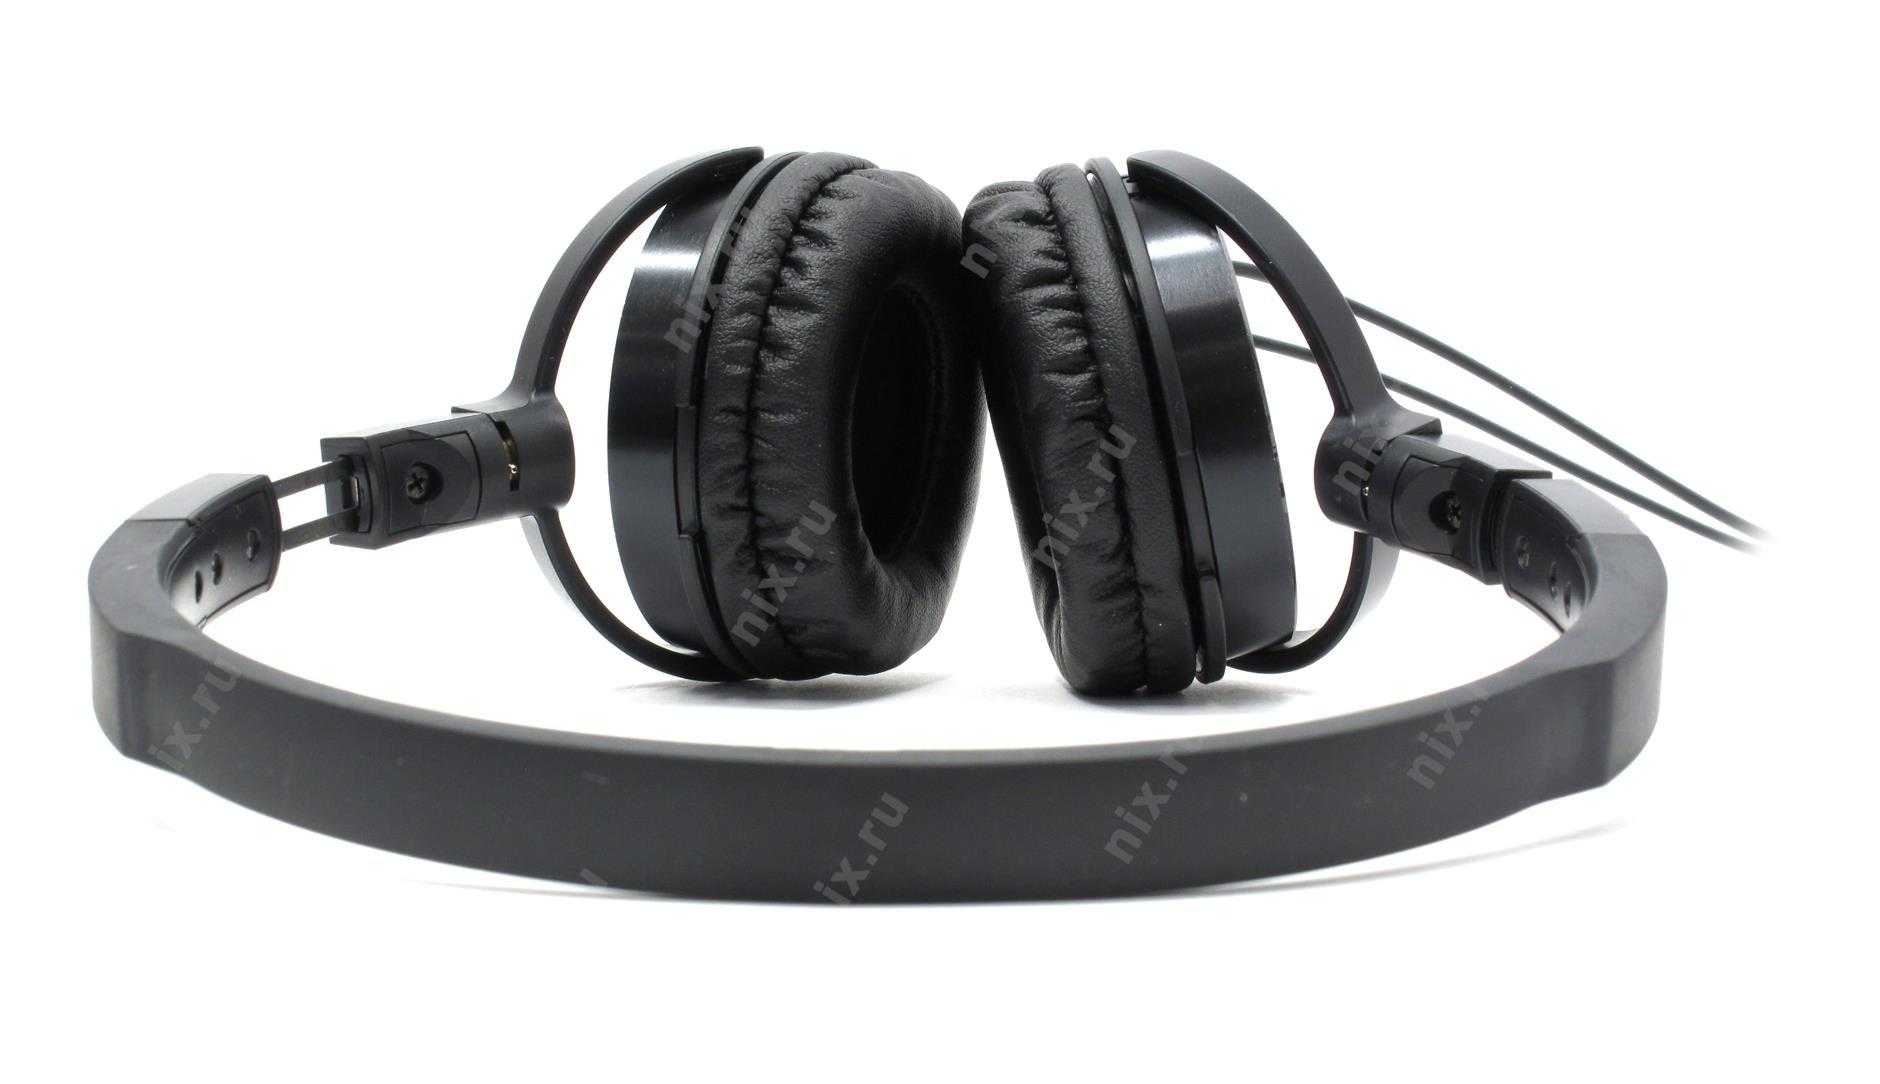 Audio-technica ath-es55 wh (белый) - купить , скидки, цена, отзывы, обзор, характеристики - bluetooth гарнитуры и наушники